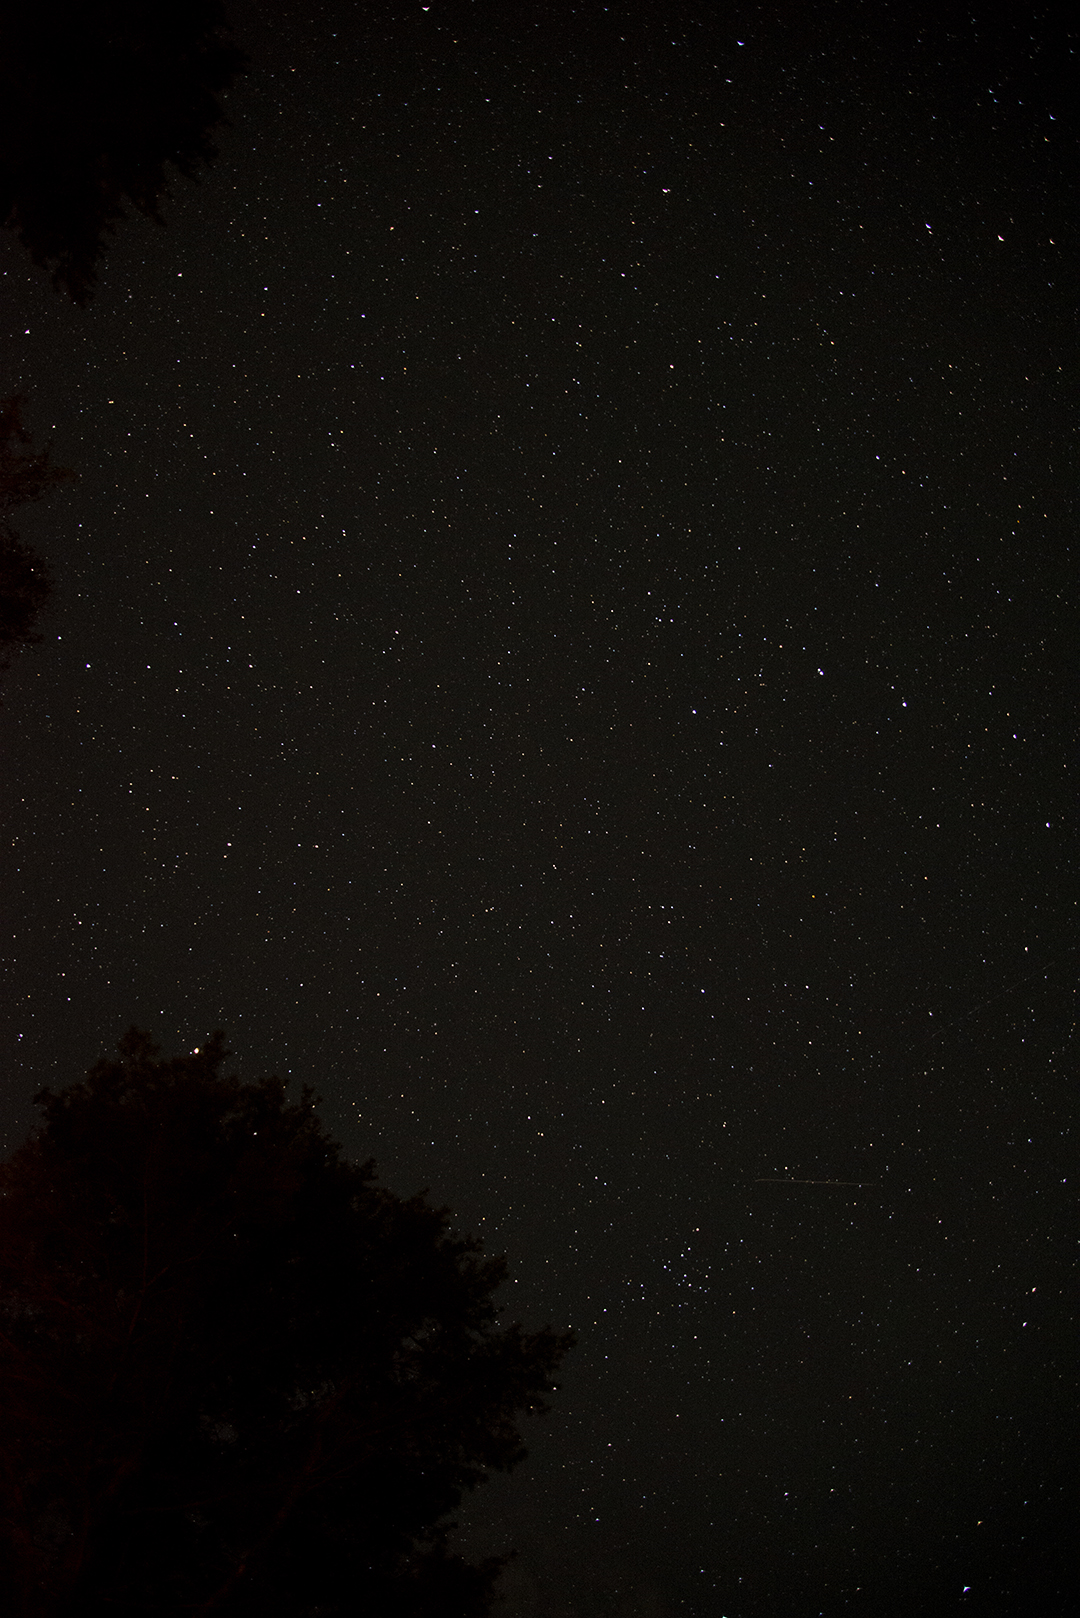 The night sky at Whispering Springs, Grafton Ontario 